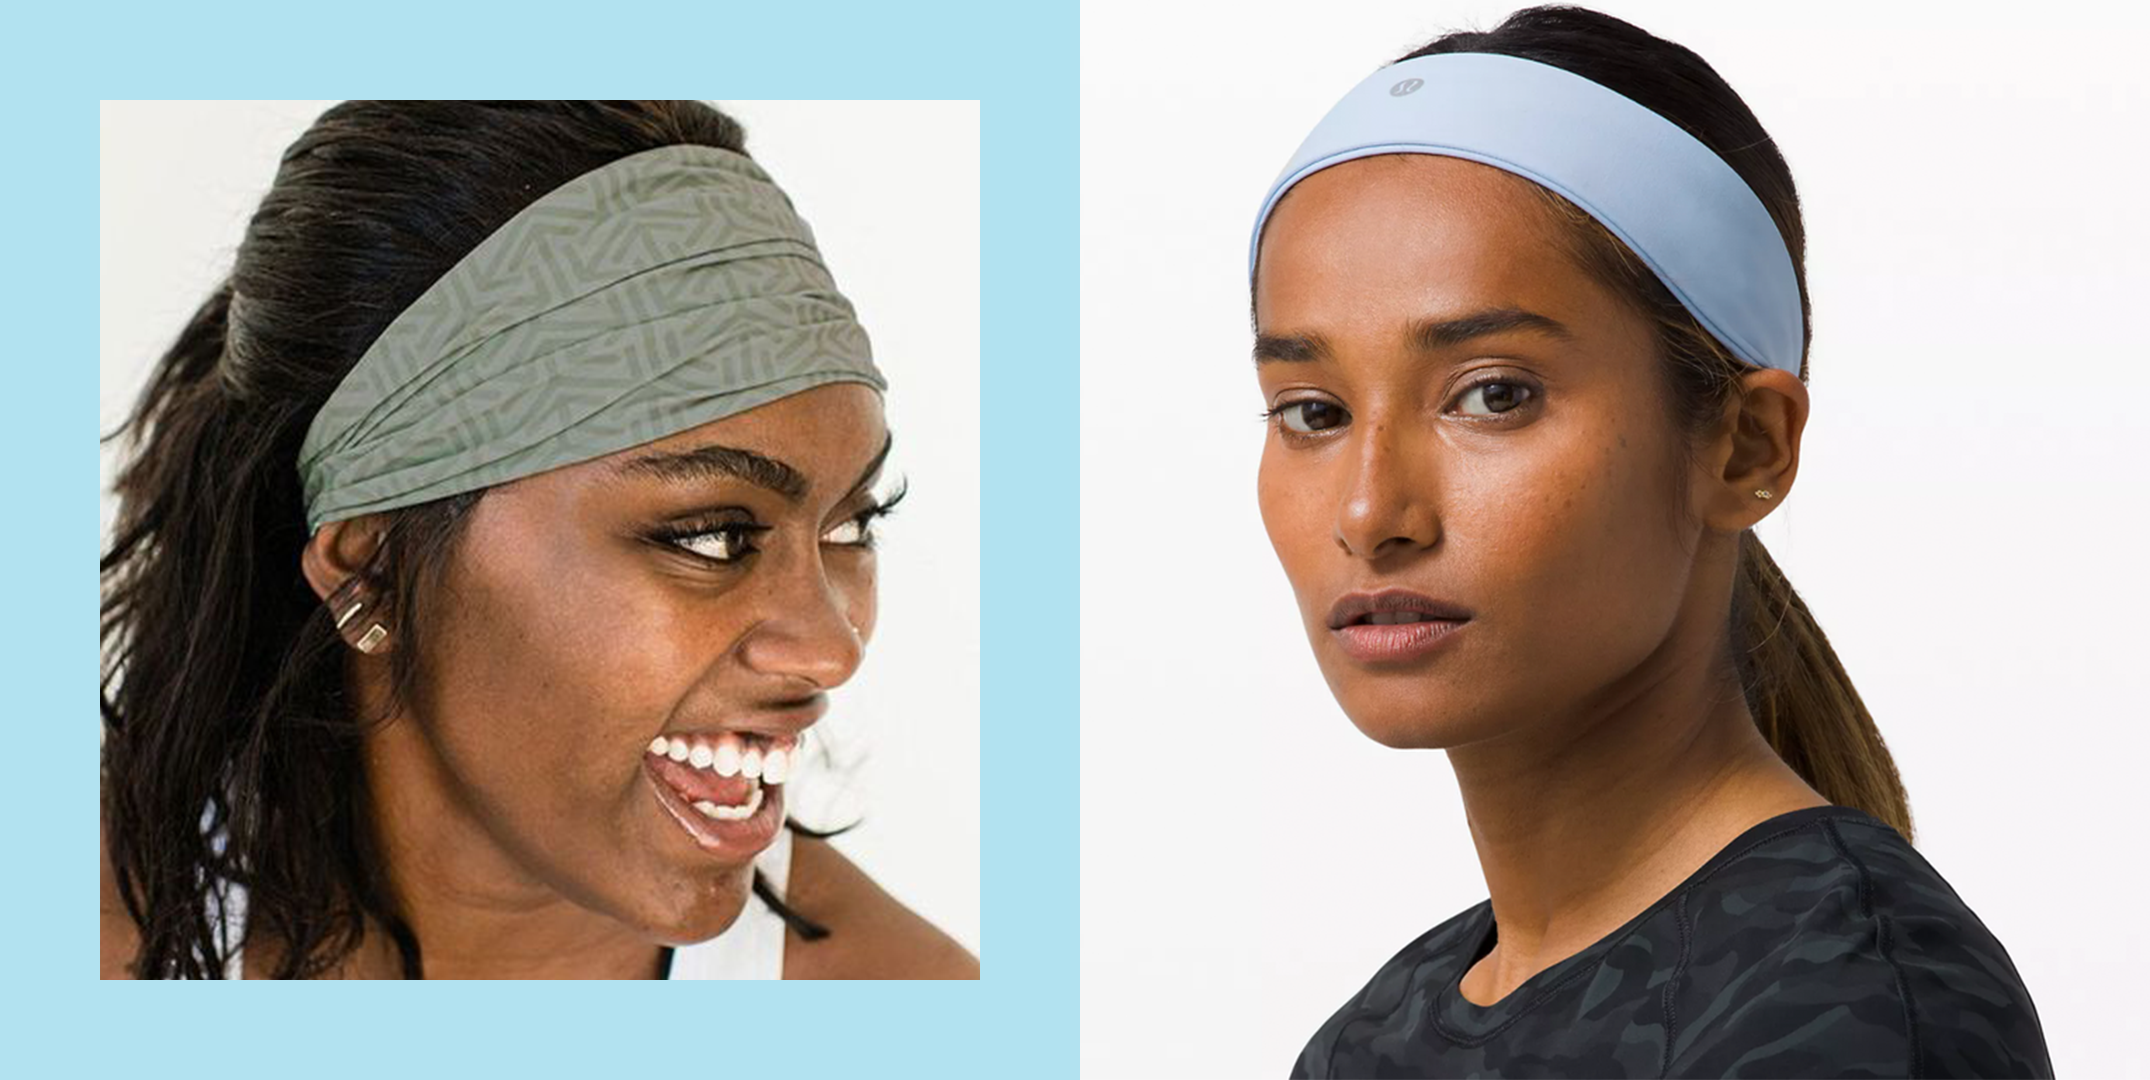 4 Great Ways to Wear an Elastic Headband